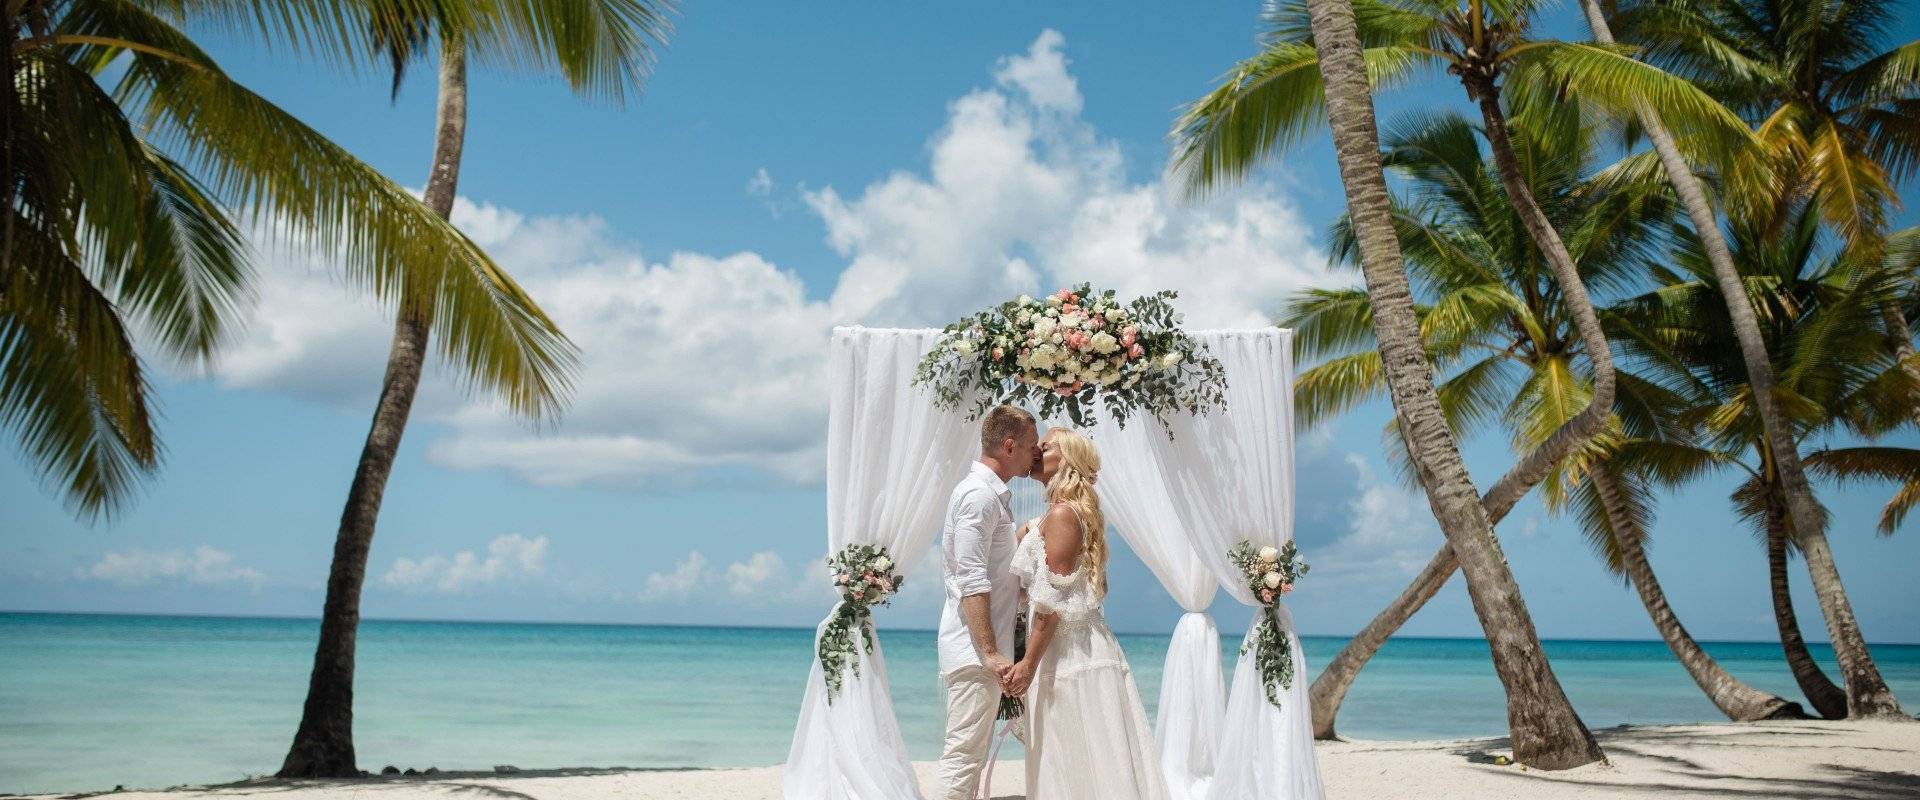 Свадьба в доминикане, цены на свадебные туры в доминикану, официальная свадьба в доминикане | лучшие предложения от туроператора «арт-тур»